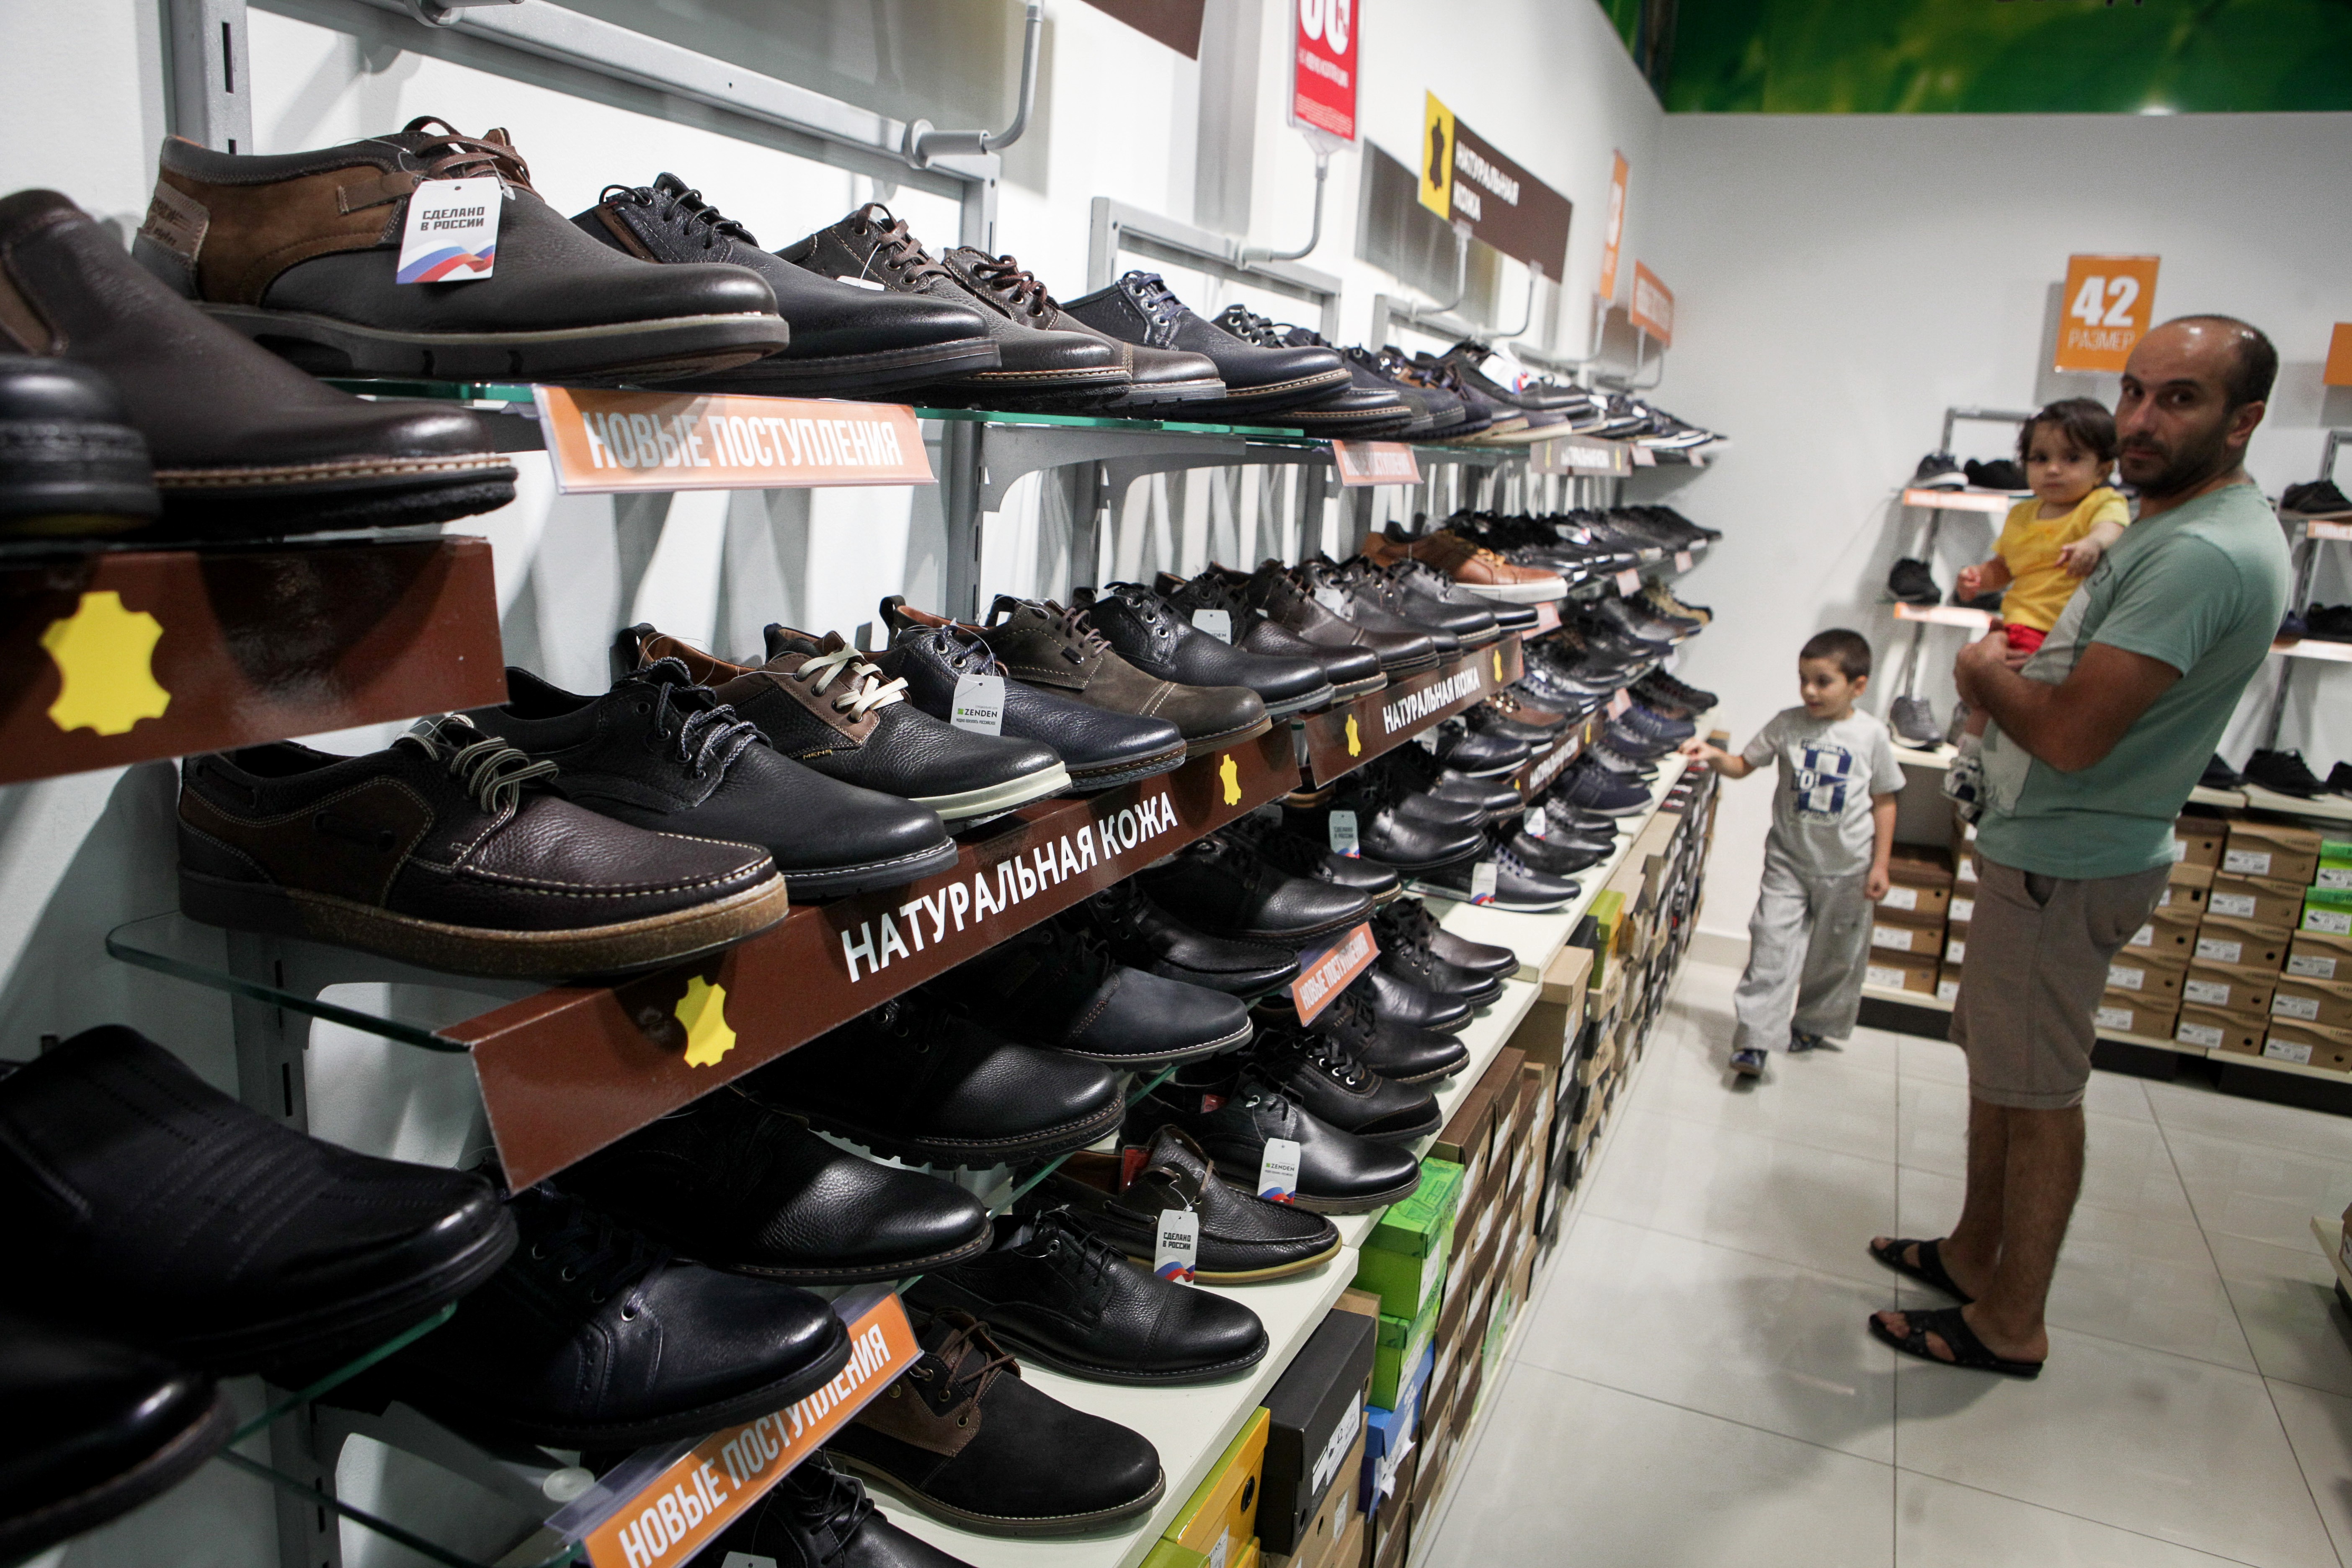 Много одежды и обуви магазин. Магазин мужской обуви. Рынок обуви. Рынок мужской обуви. Обувные товары.